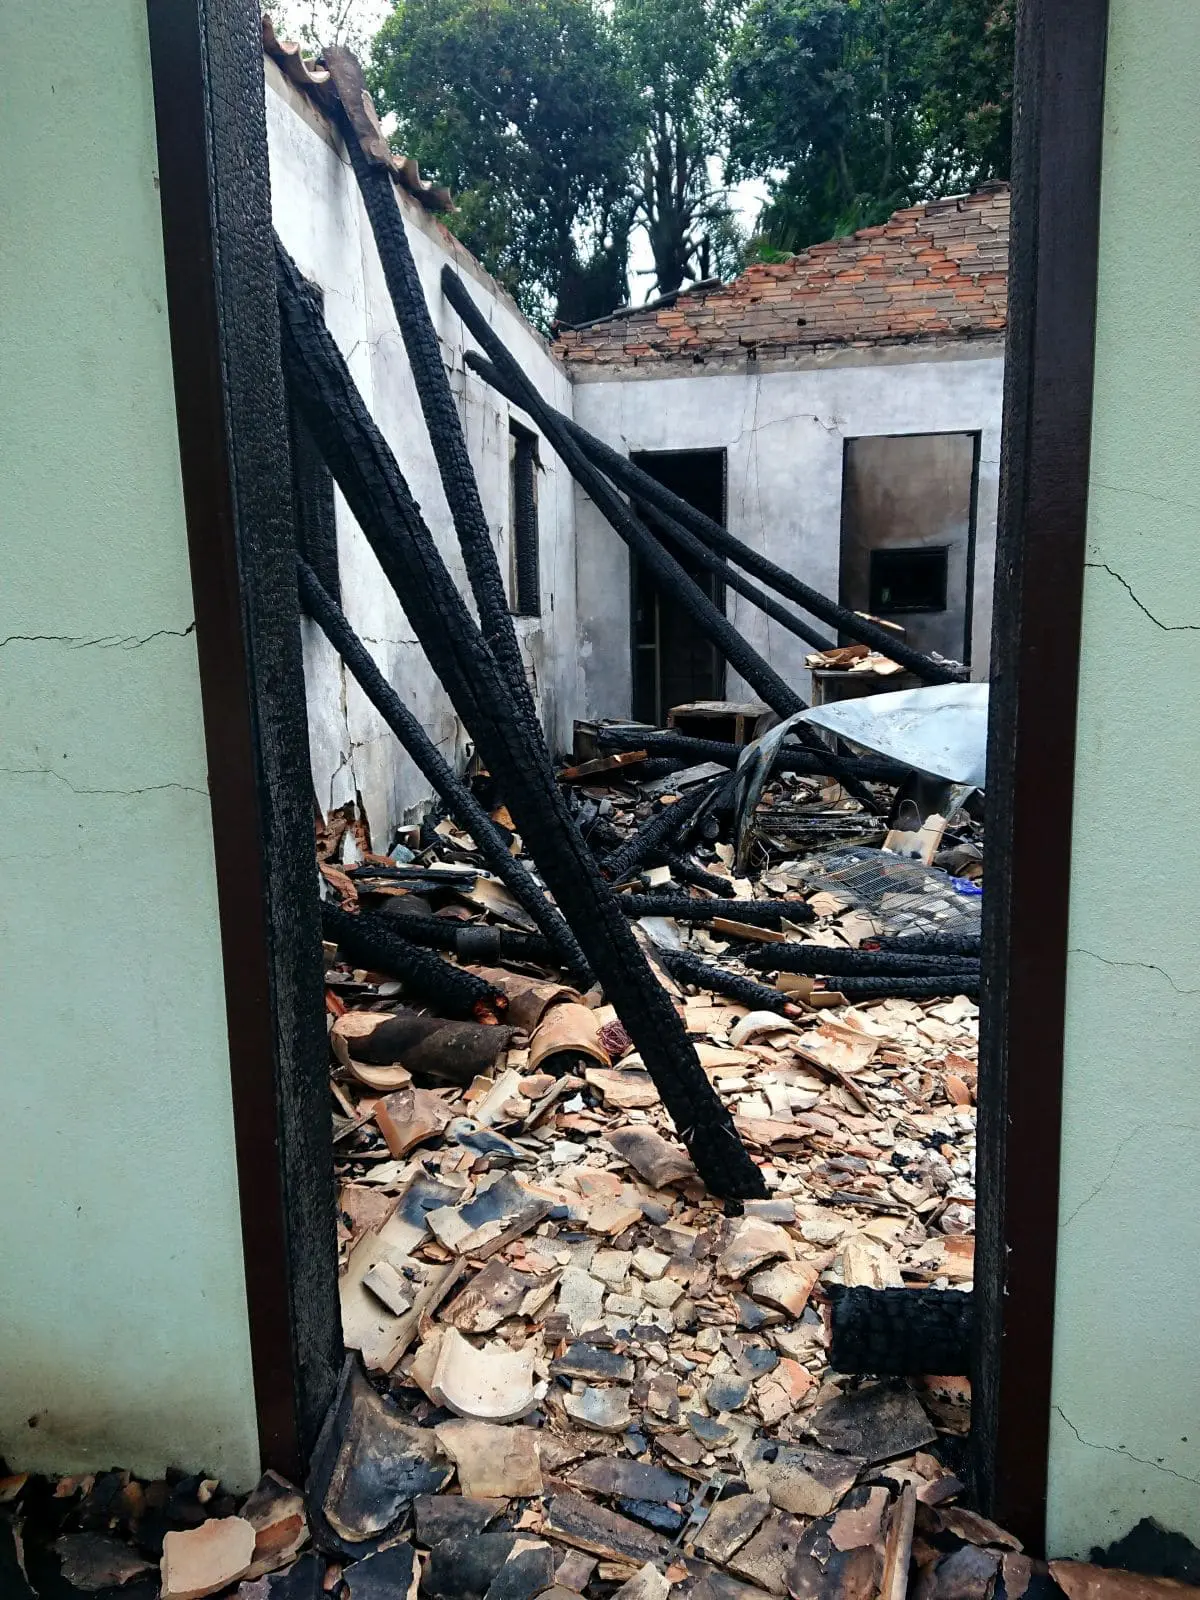 Família afetada por incêndio precisa de ajuda para construir nova casa